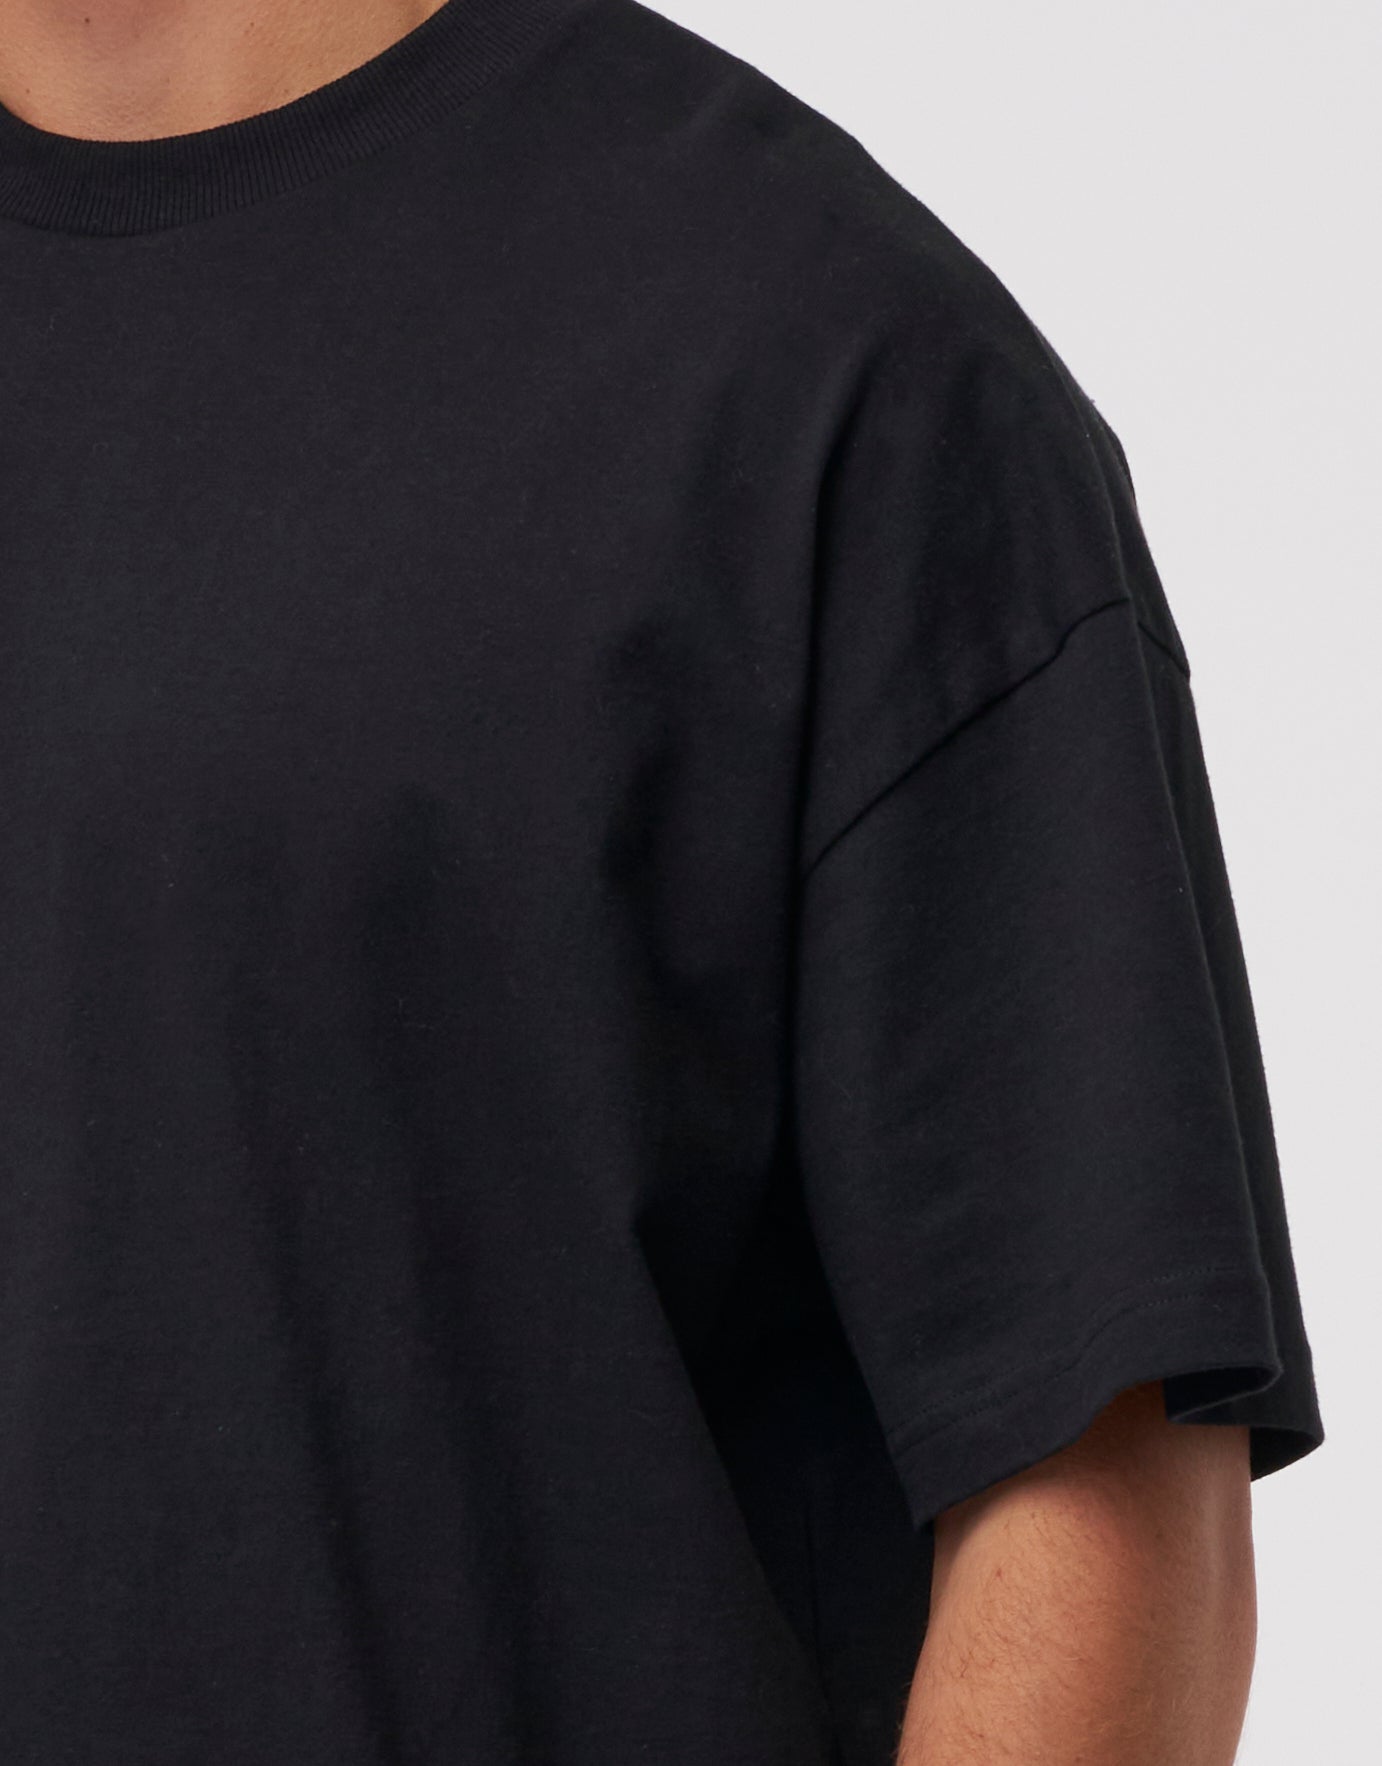 Men's Short Sleeve T Shirts | Hallenstein Brothers NZ